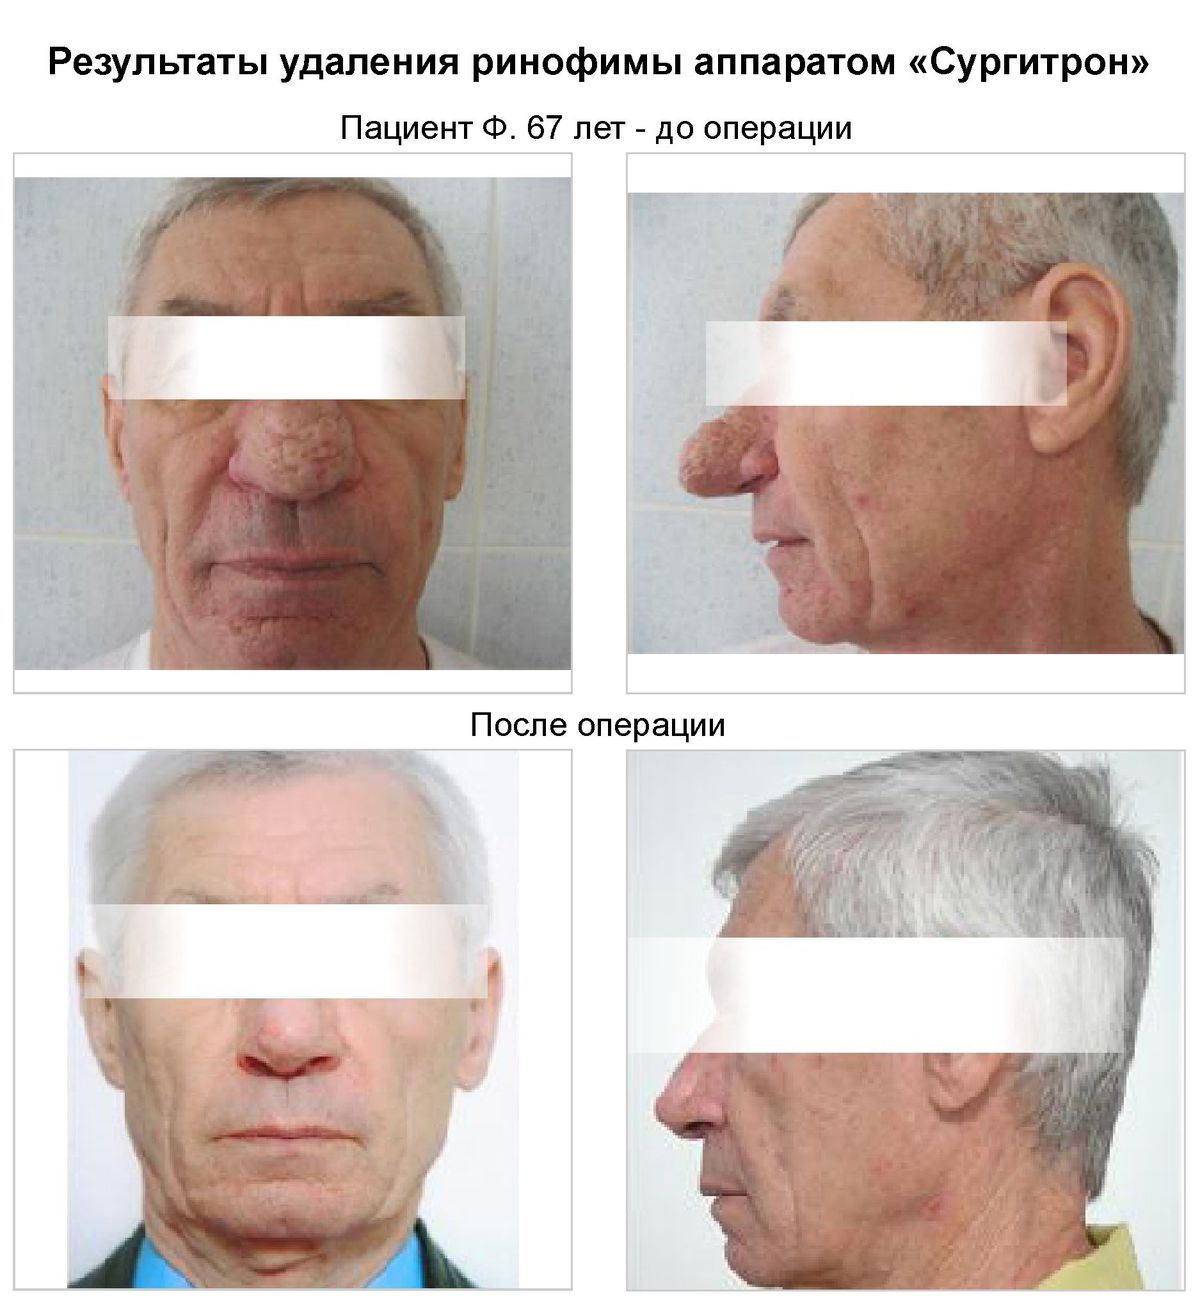 Лечение ринофимы носа в Клинике Подологии, фото до и после